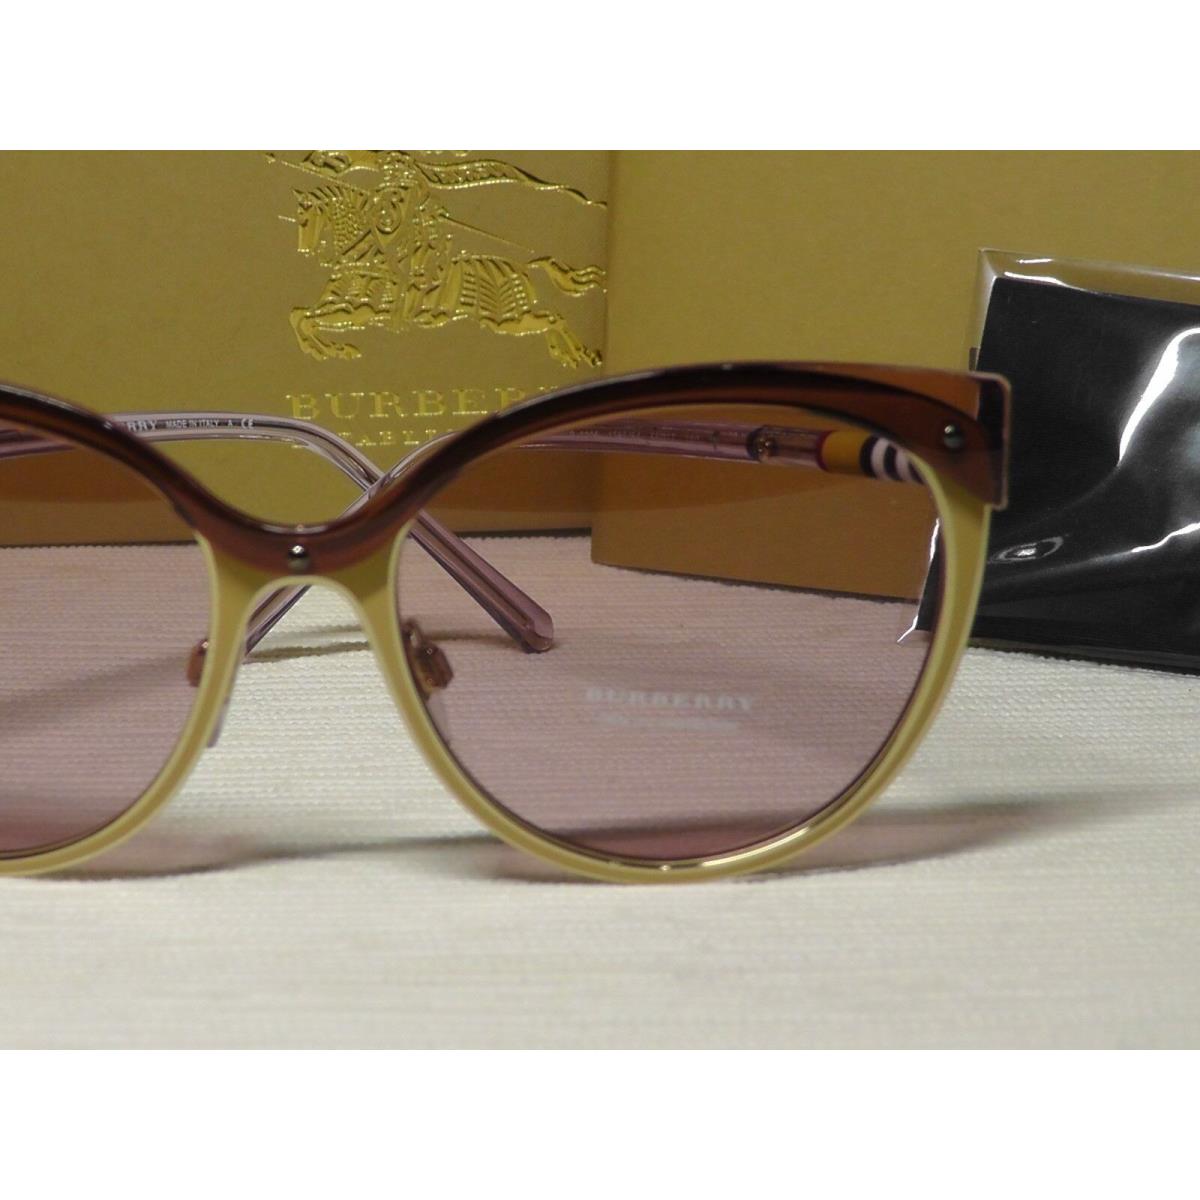 Burberry sunglasses  - Beige/Brushed/ Gold-tone Frame, Light Pink Lens 4